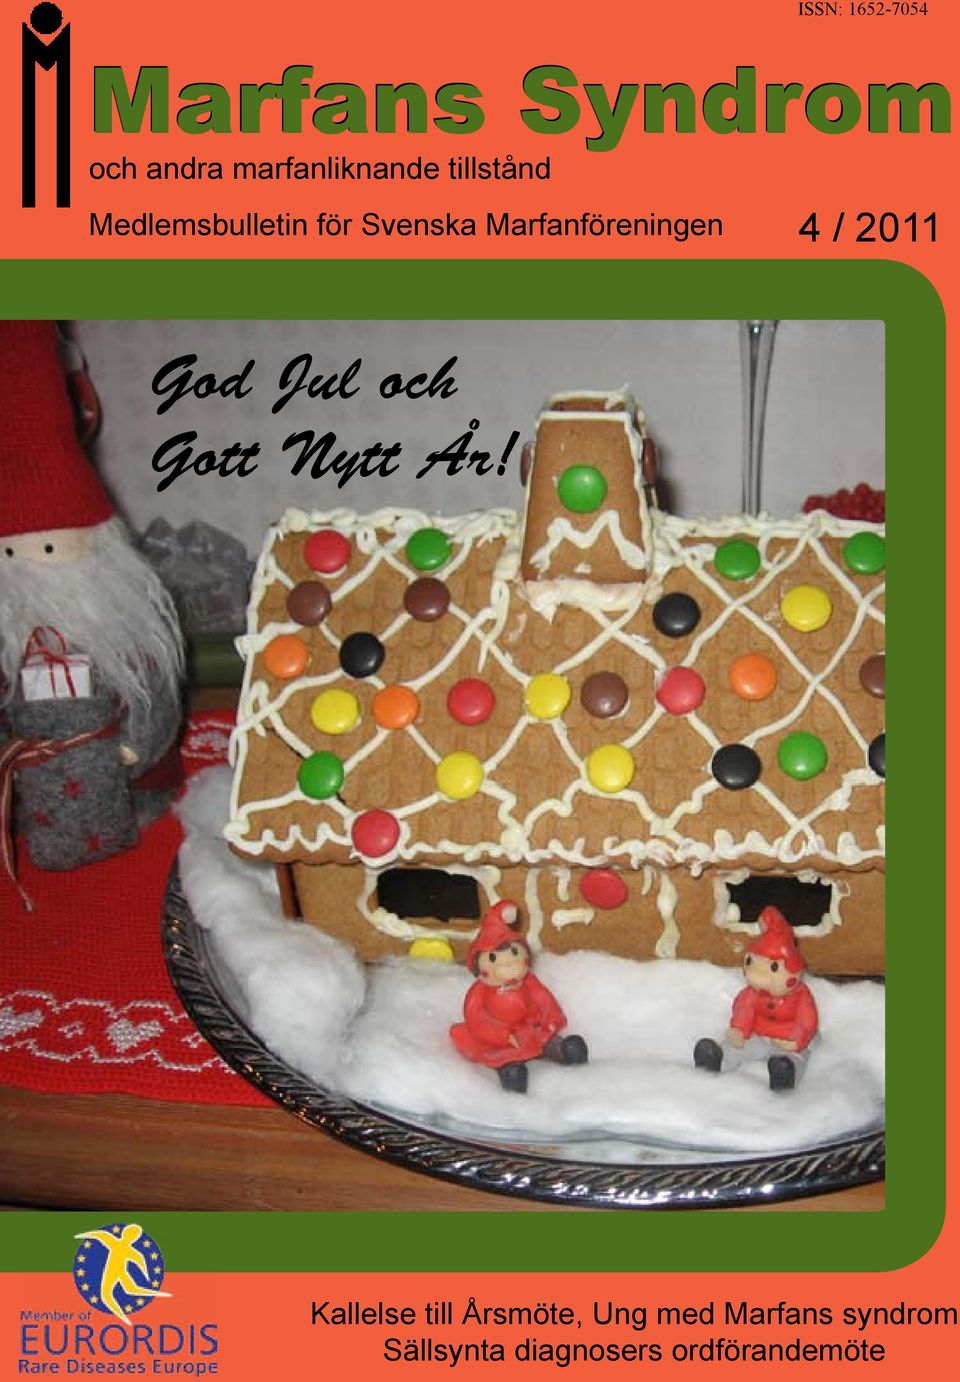 / 2011 God Jul och Gott Nytt År!